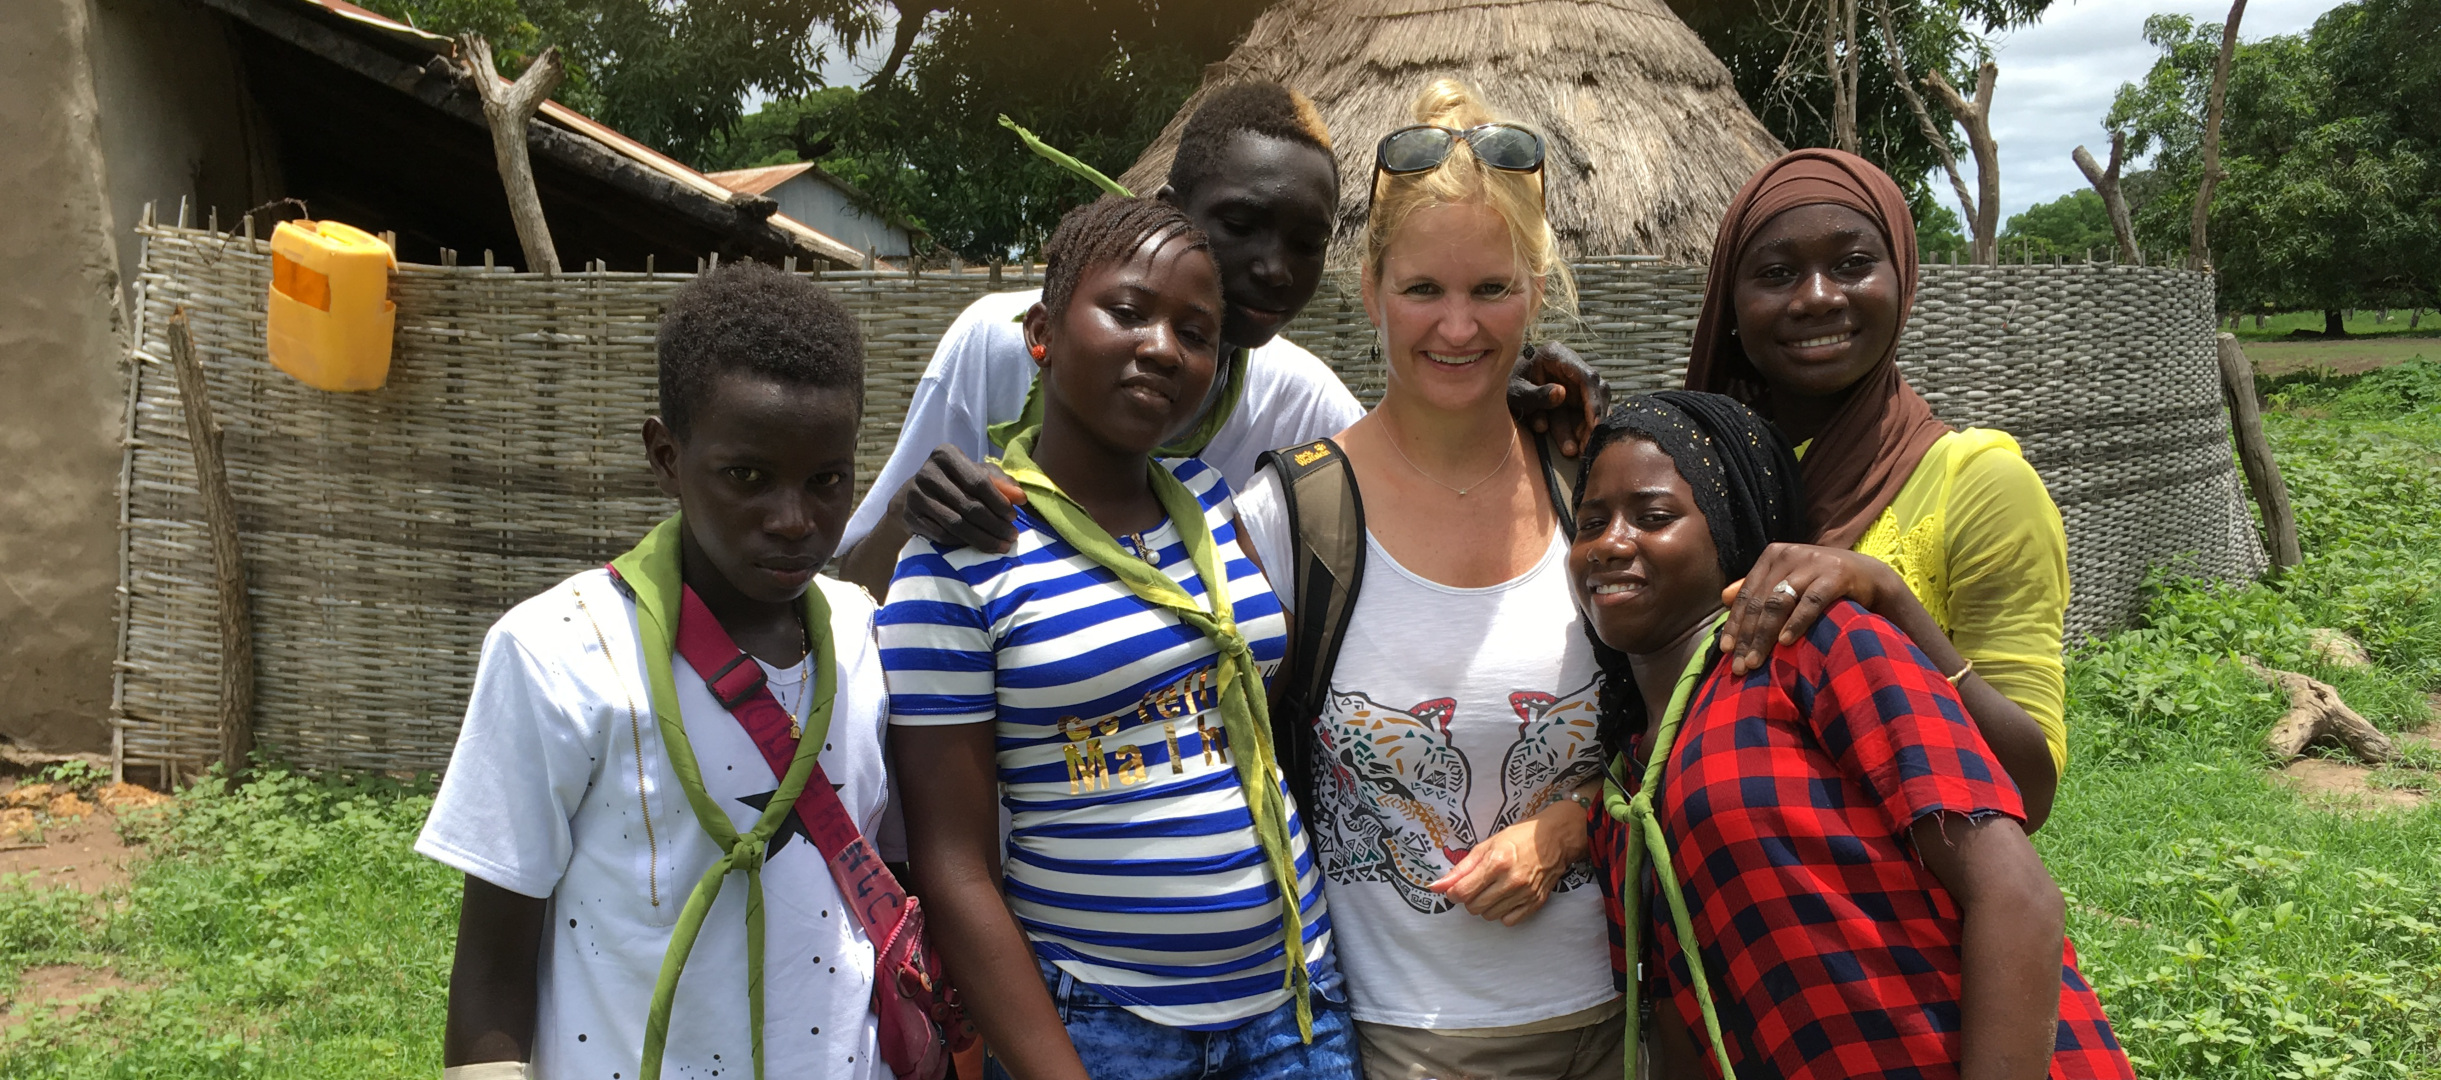 Eva Martin mit Jugendlichen im World Vision-Projekt gegen Mädchen-Beschneidung